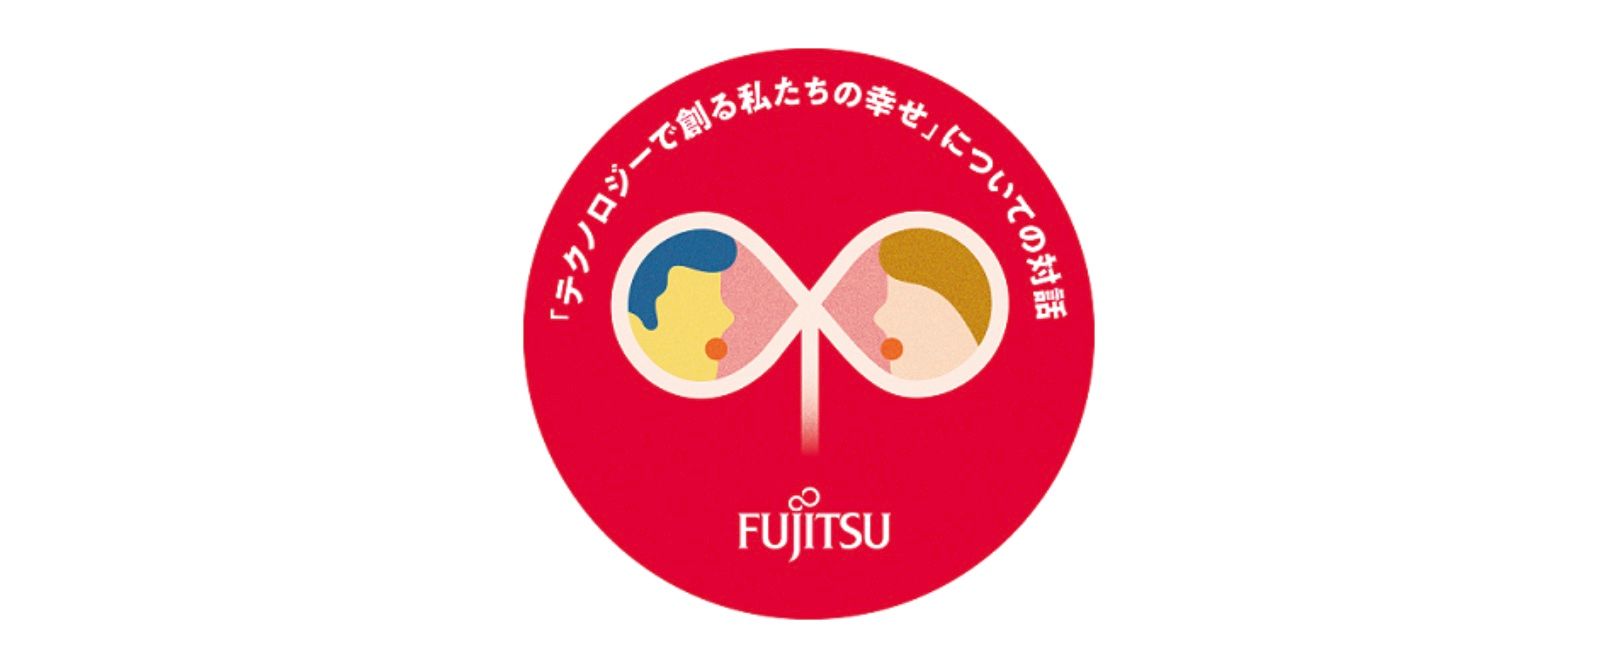 Fujitsu участвует в мероприятиях, призванных прислушаться к голосам будущих поколений и способствовать социальному благополучию в Японии.